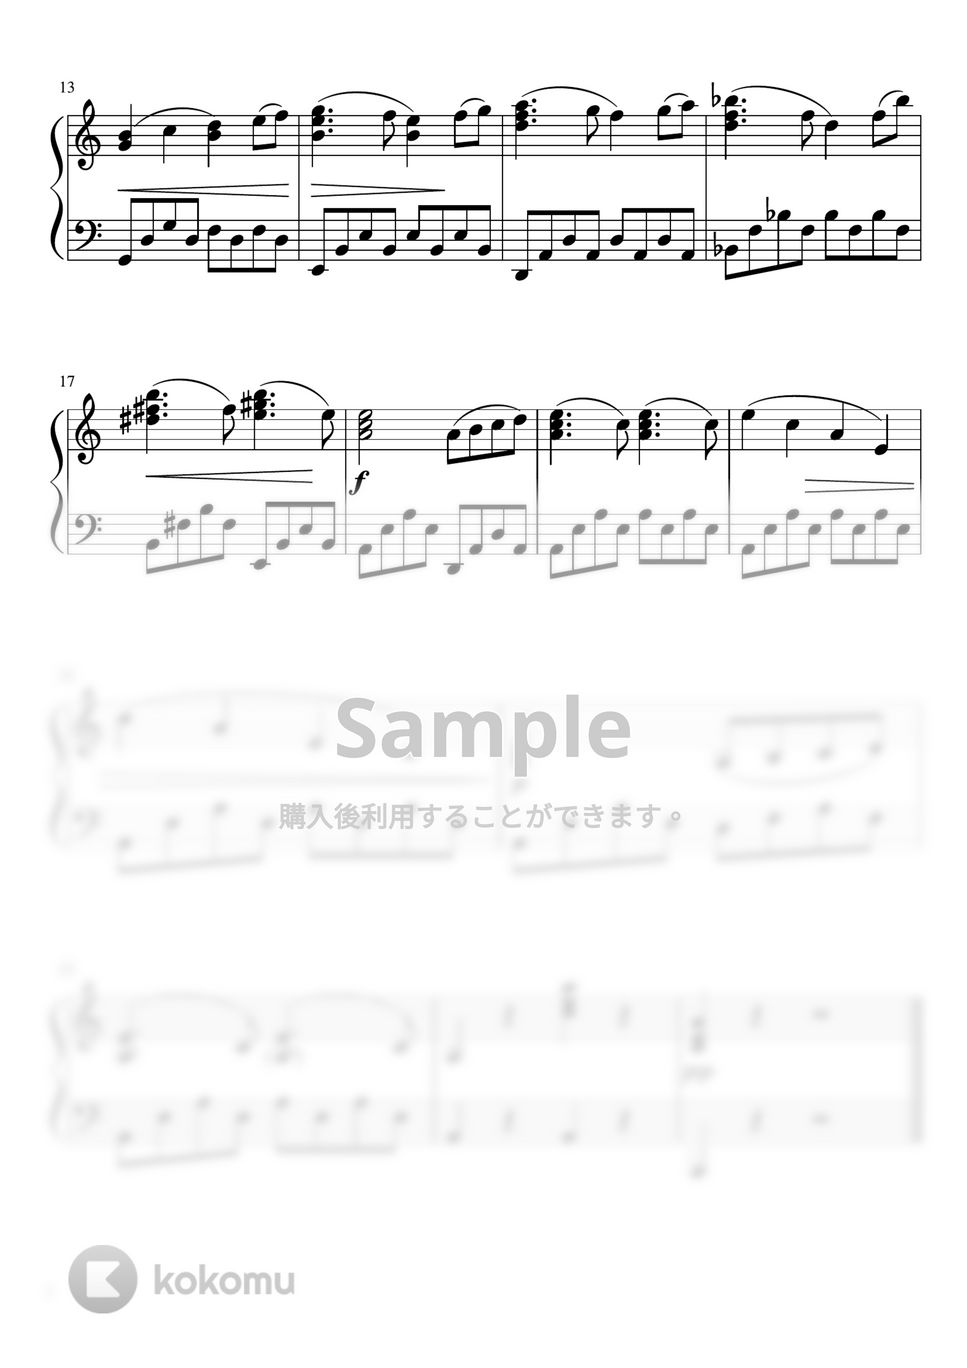 チャイコフスキー - 白鳥の湖より「情景」第2幕 (ピアノソロ初〜中級) by pfkaori